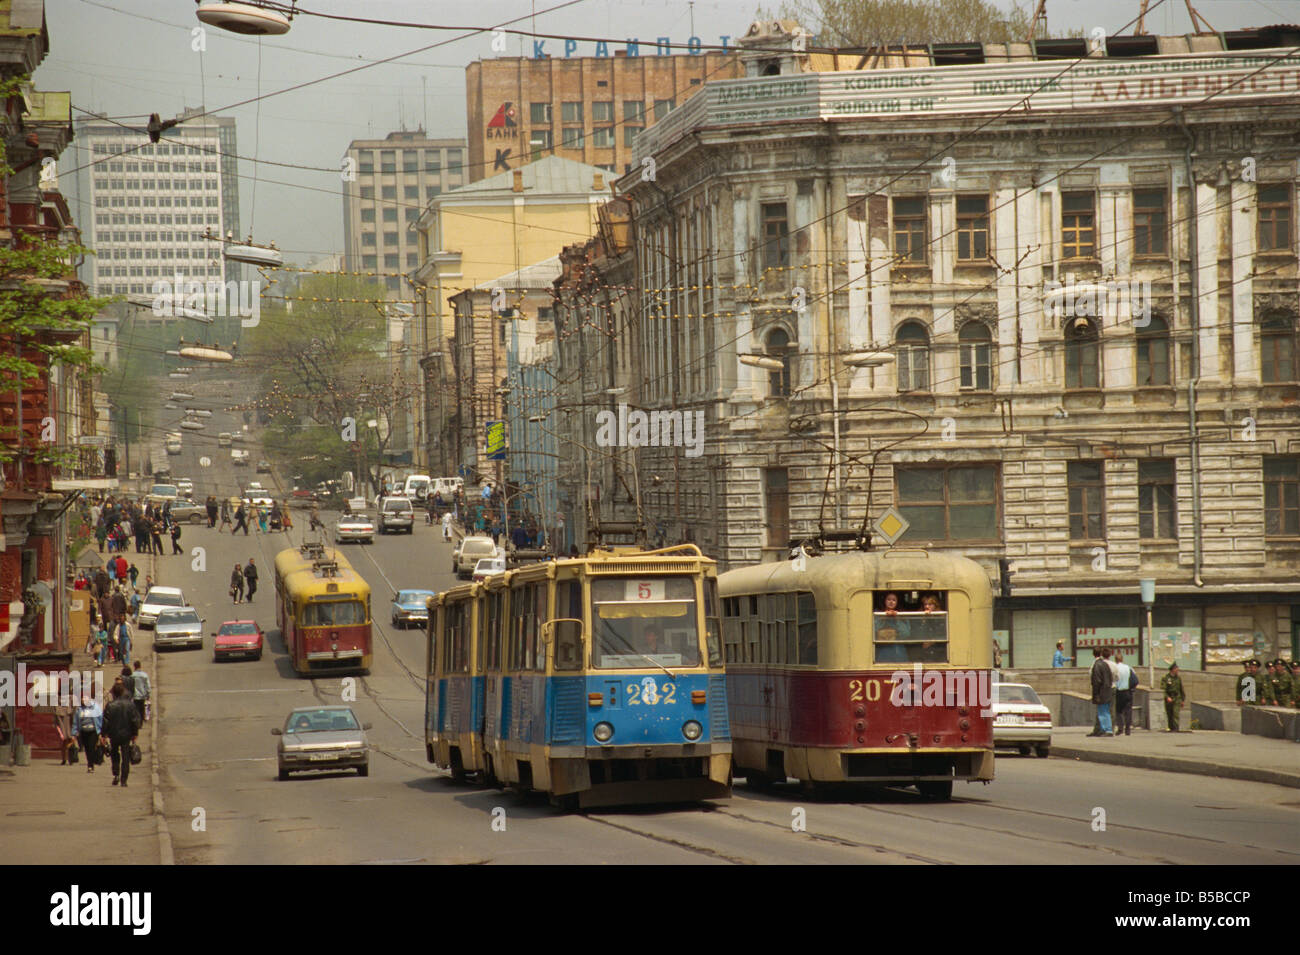 Straßenbahnen in der Straße Wladiwostok russischen Fernen Osten Russland Europa Stockfoto